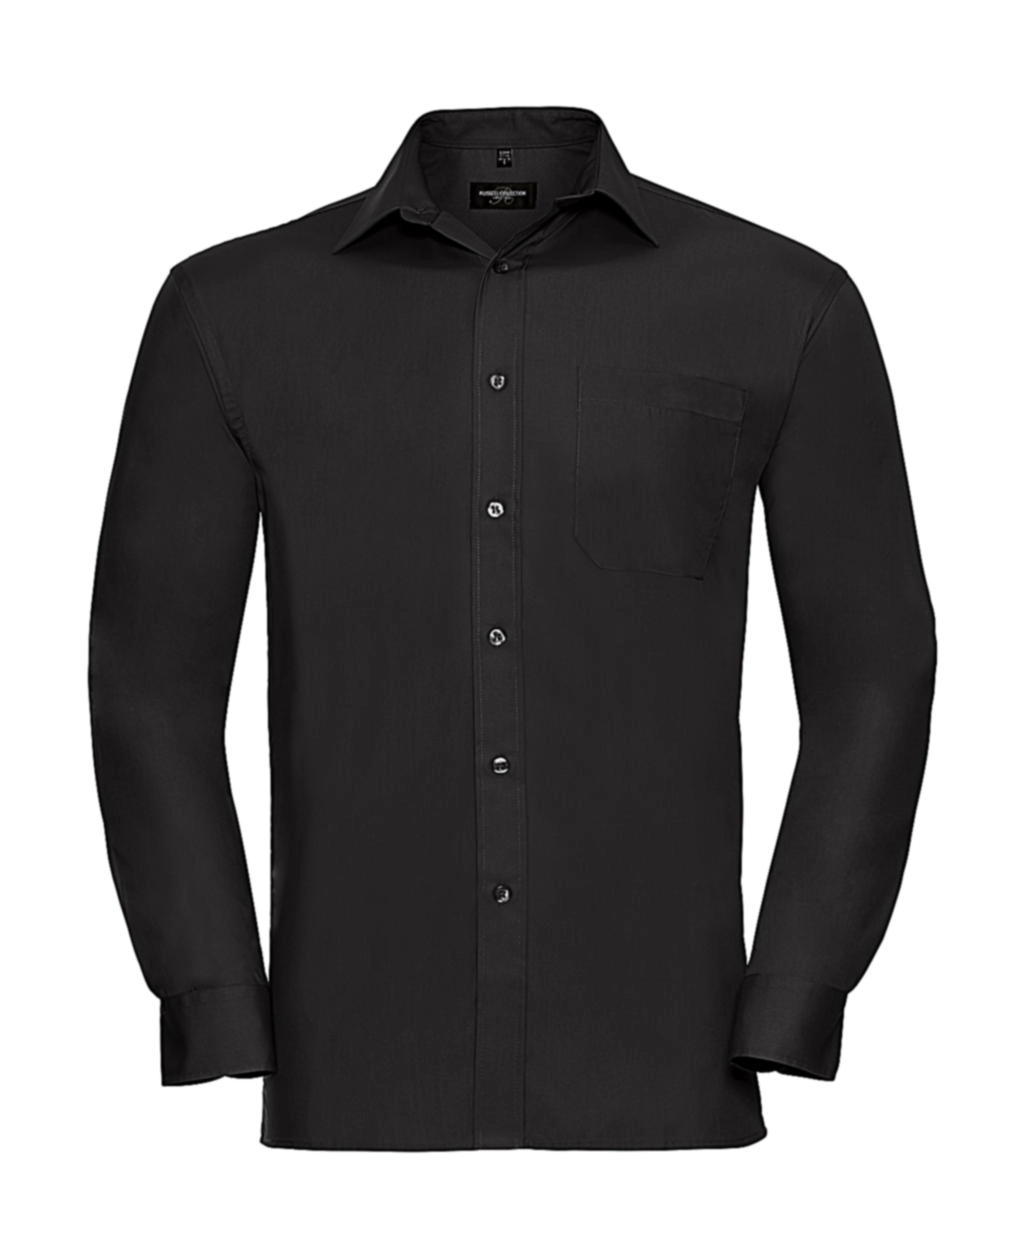 Cotton Poplin Shirt LS zum Besticken und Bedrucken in der Farbe Black mit Ihren Logo, Schriftzug oder Motiv.